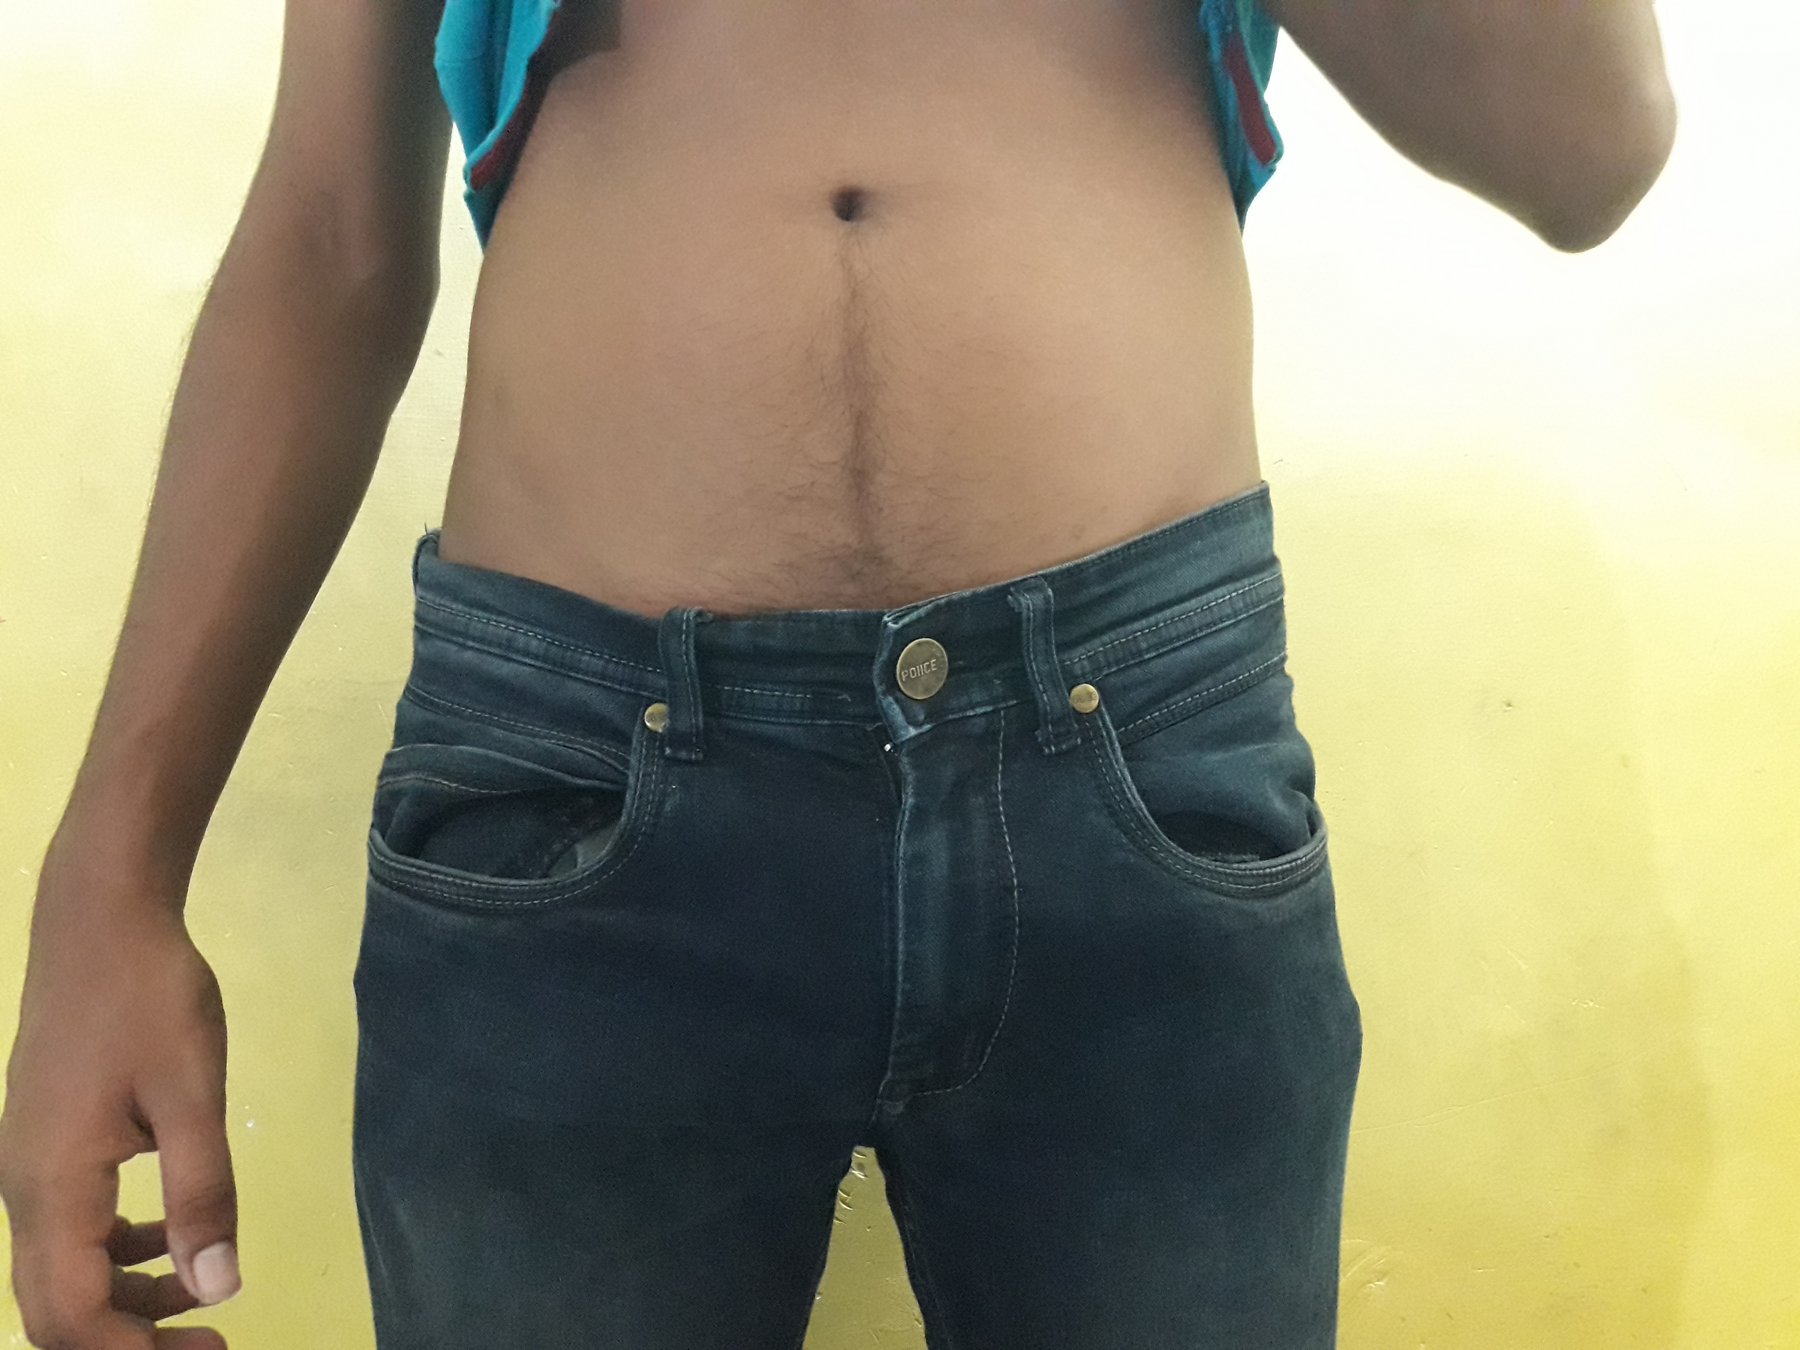 Sri lankan sexy tight jeans - Sex photo